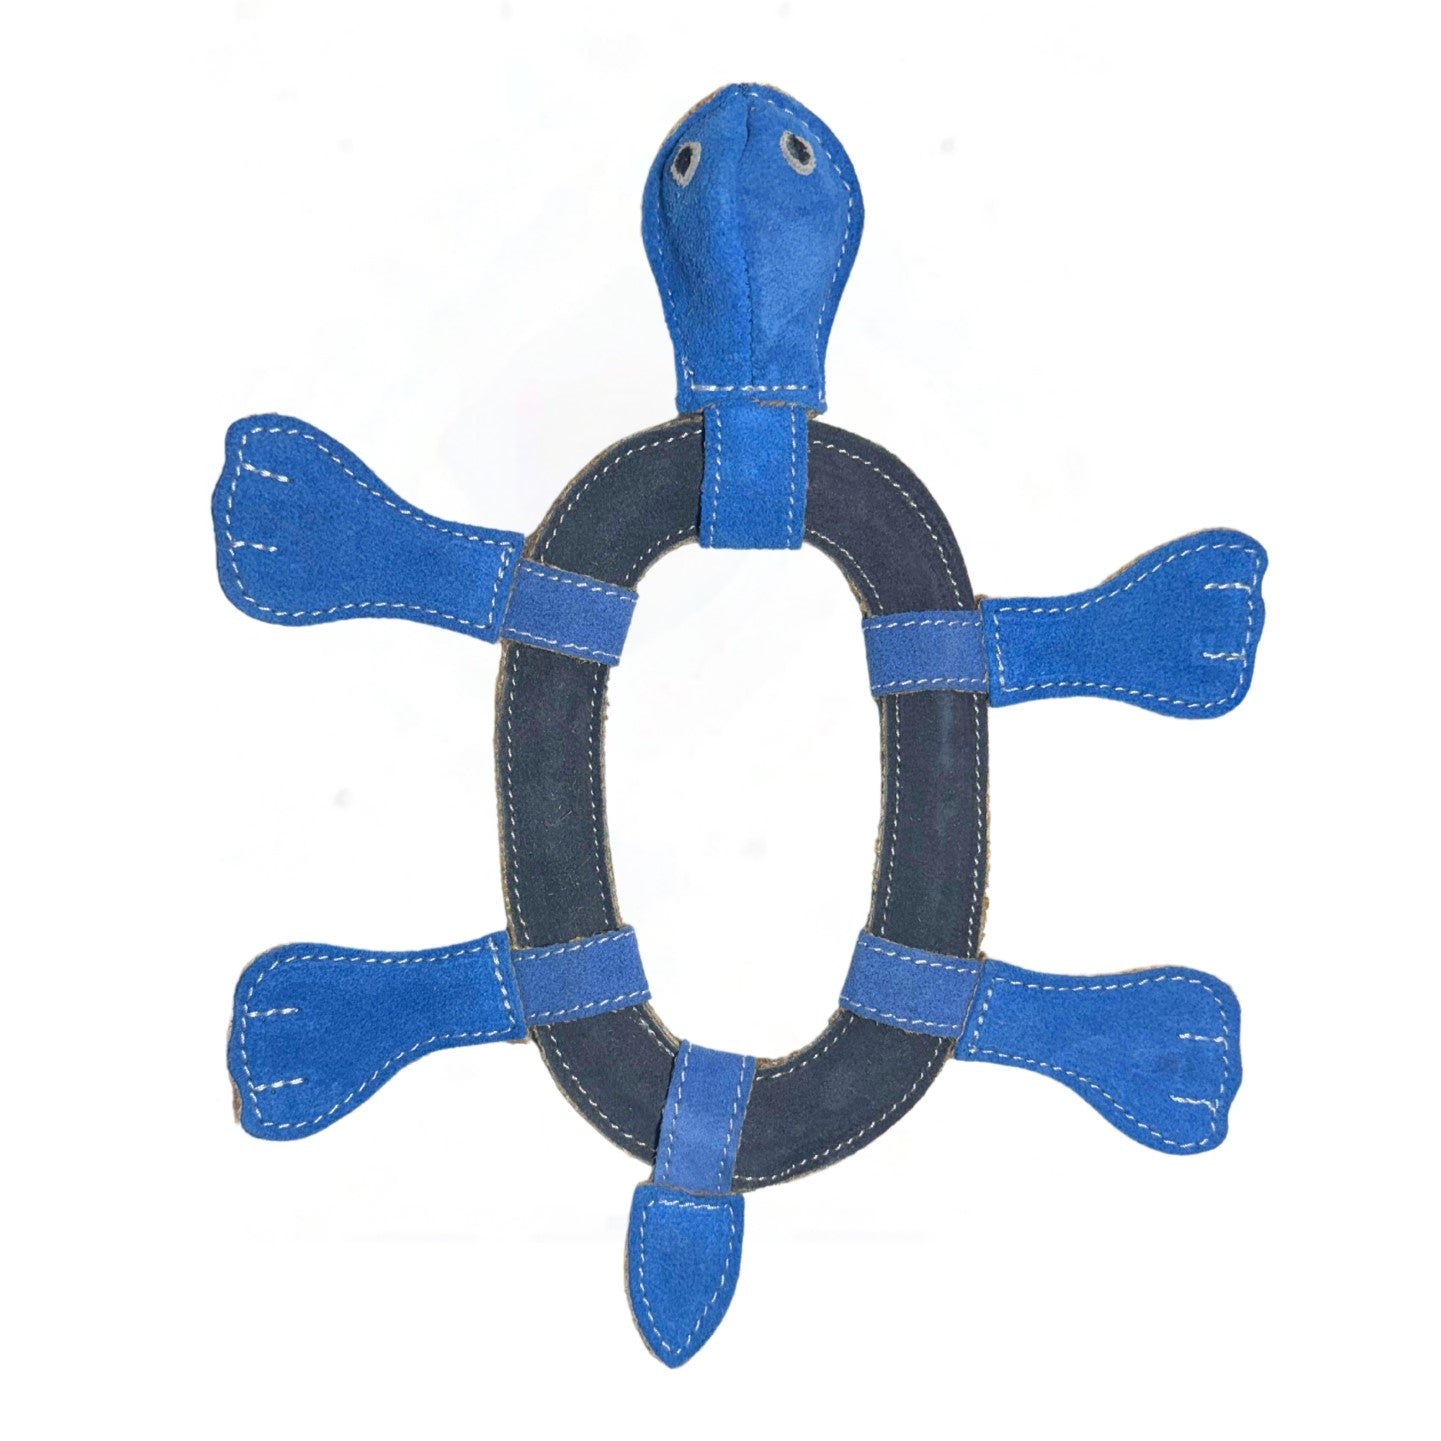 Thomas the Turtle - Blue